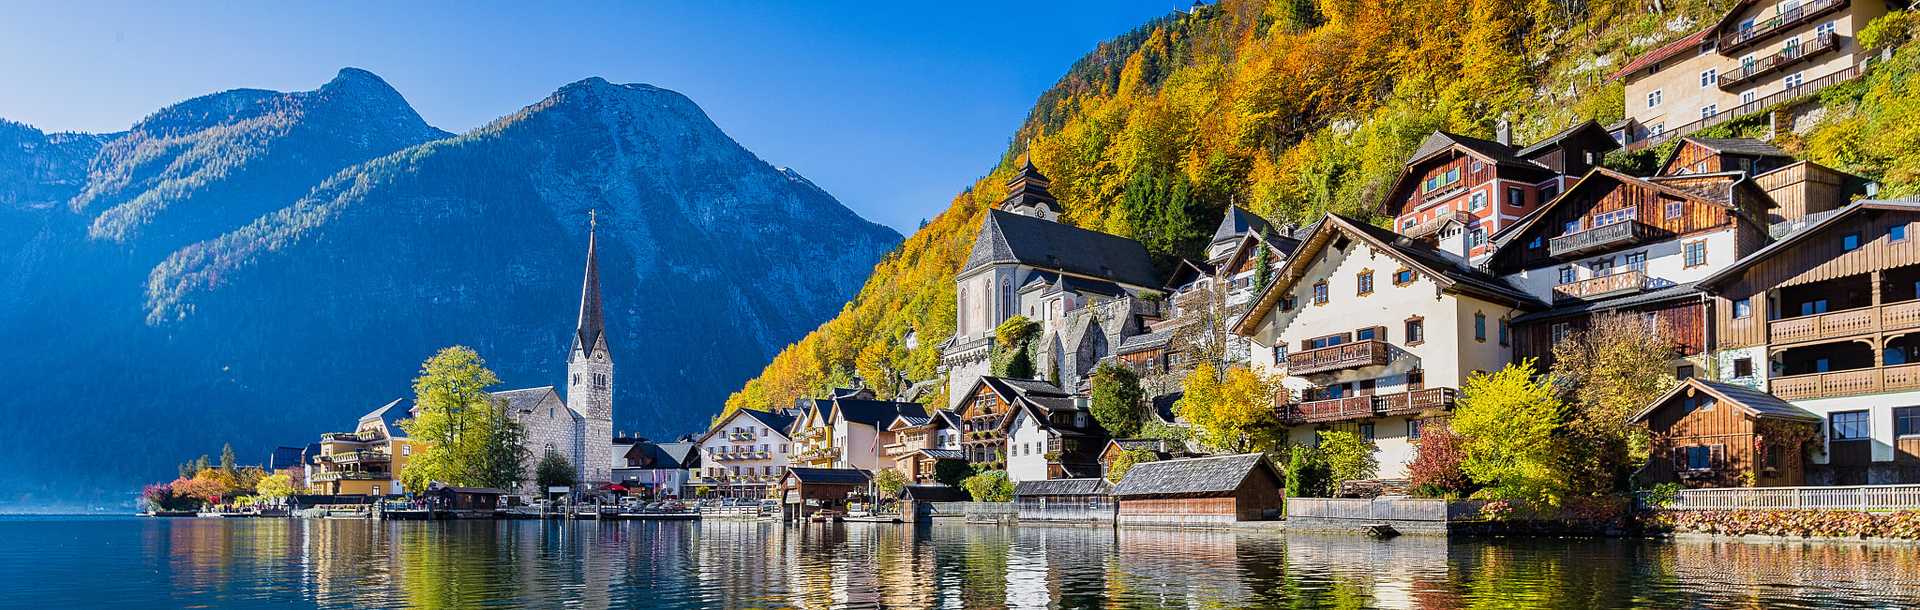 Hallstatt mountain village on Lake Hallstatt's western shore in Austria's mountainous Salzkammergut region